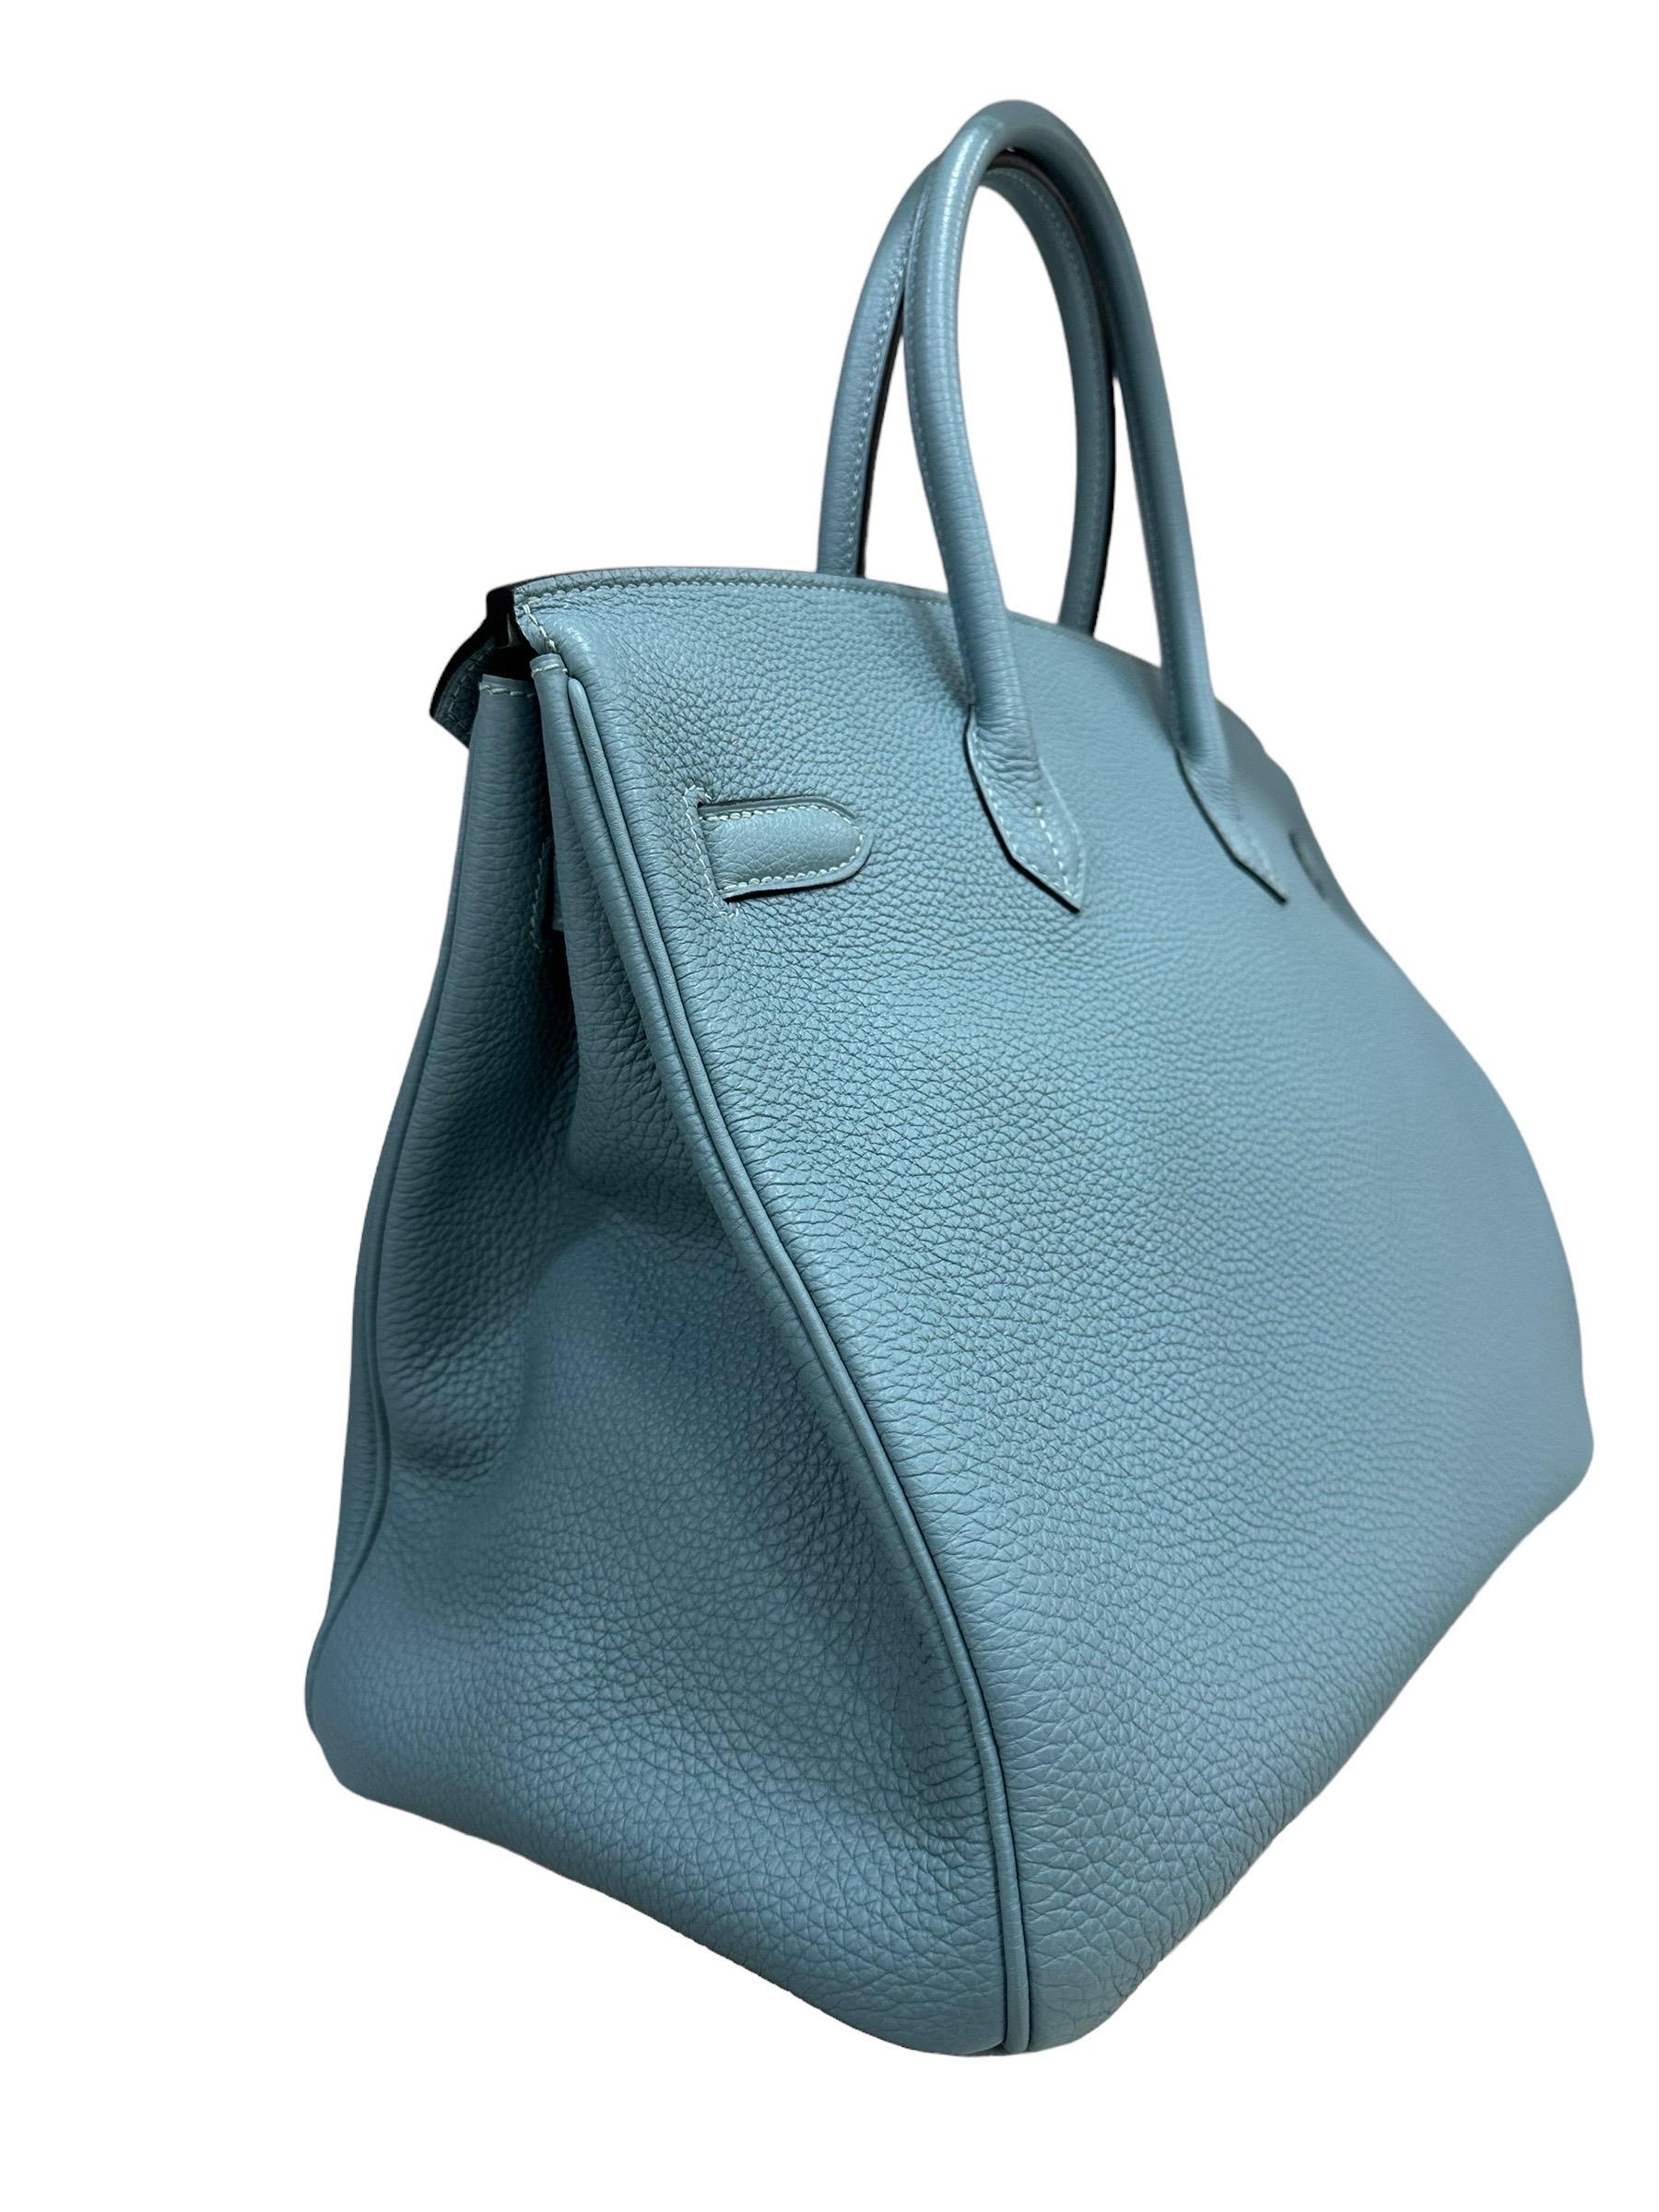 2009 Hermès Birkin 35 Togo Leather Ciel Top Handle Bag For Sale 6